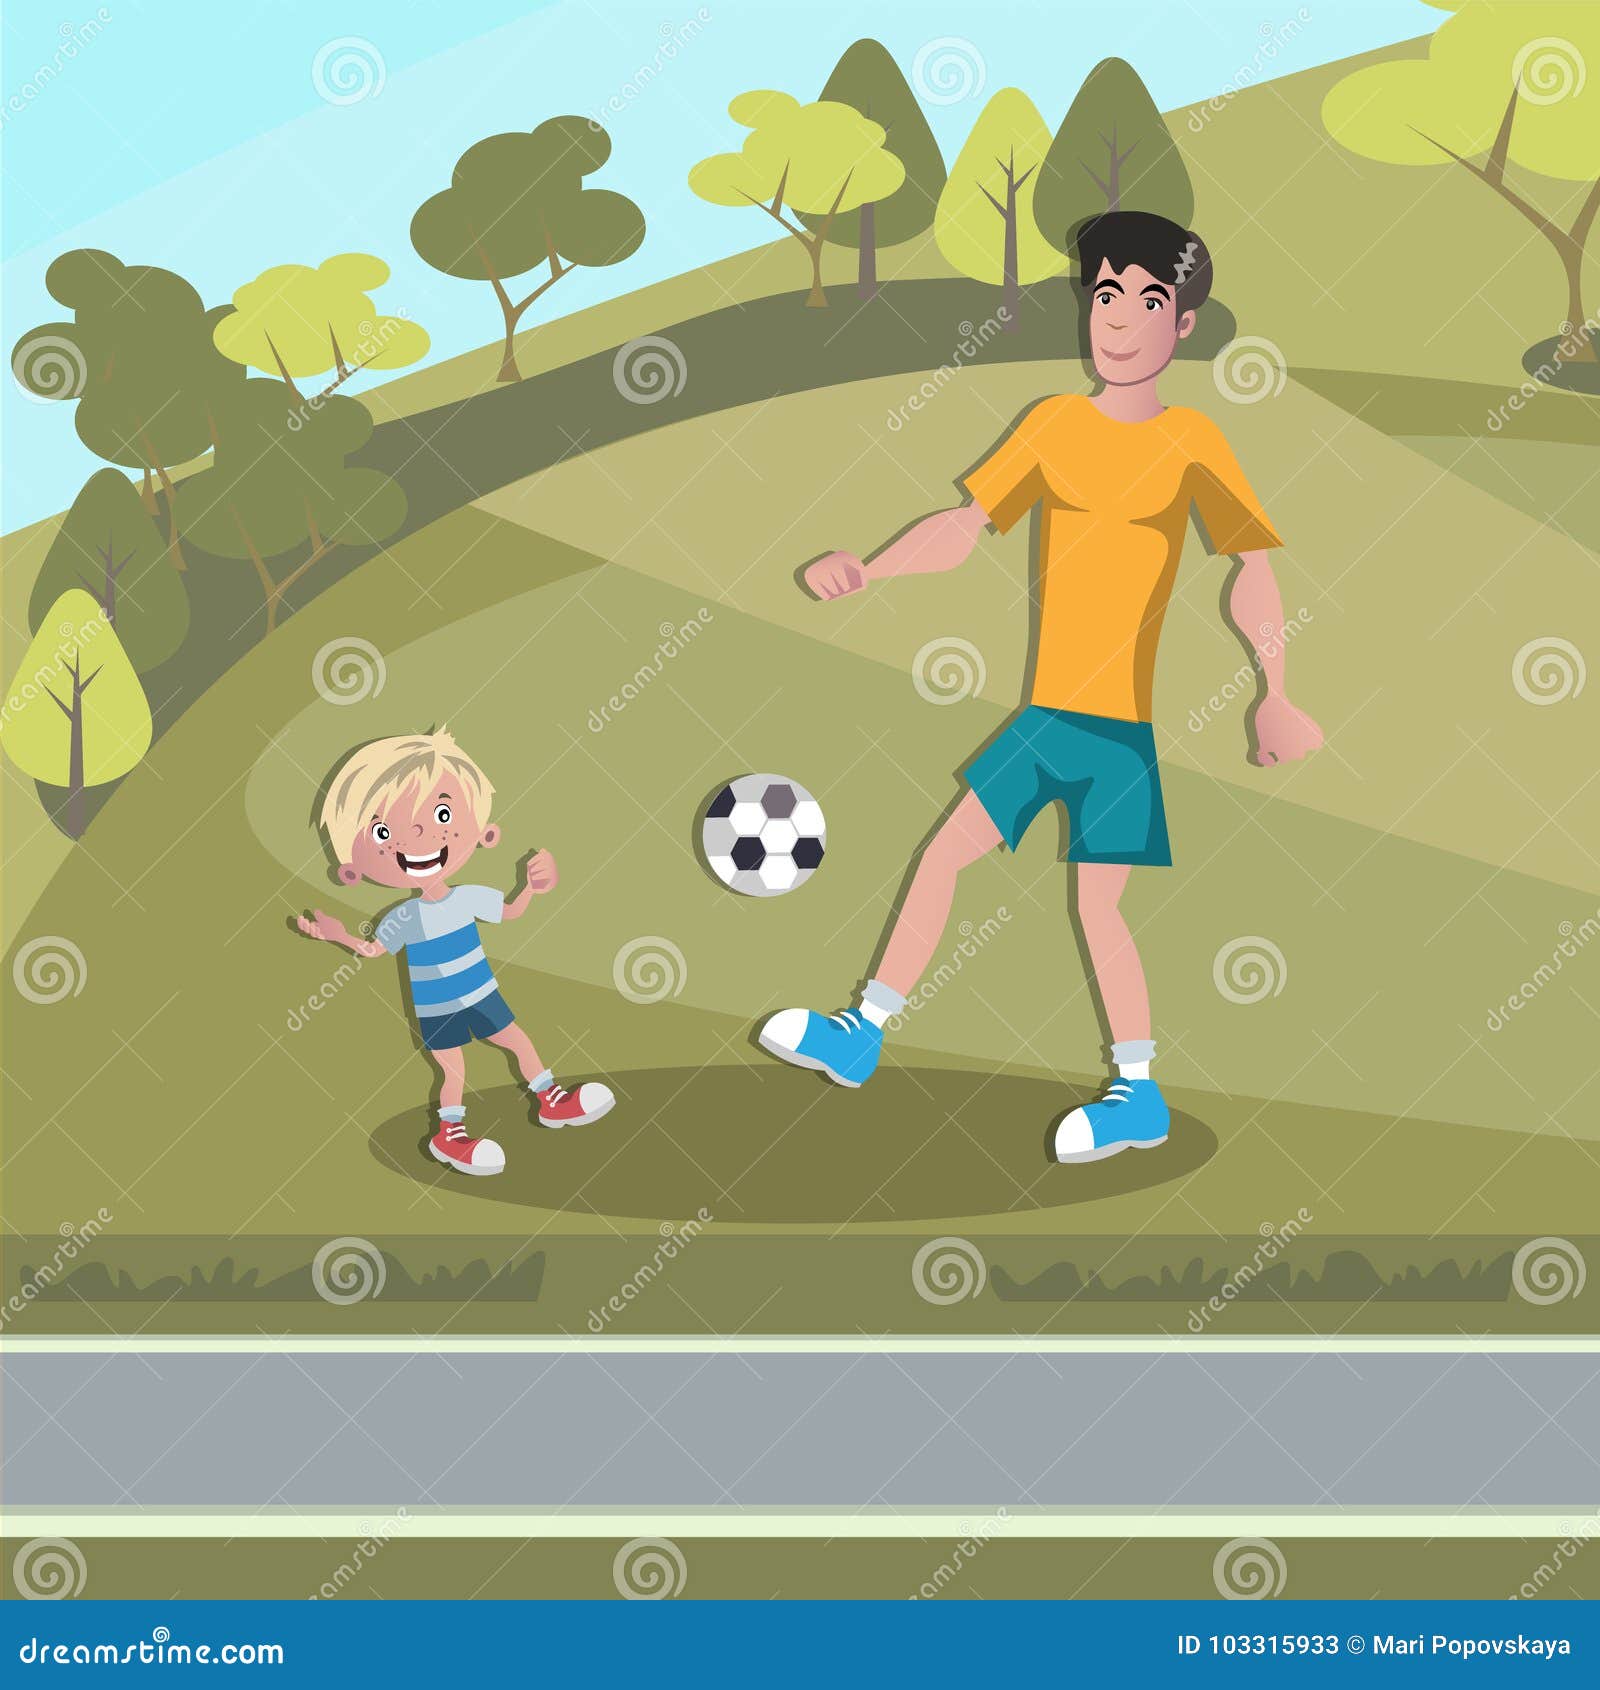 Папа играет в футбол. Папа играет в футбол иллюстрация. Отец и сын играют в футбол рисунок. Семья играет в футбол рисунок. Папа играет в футбол рисунок.